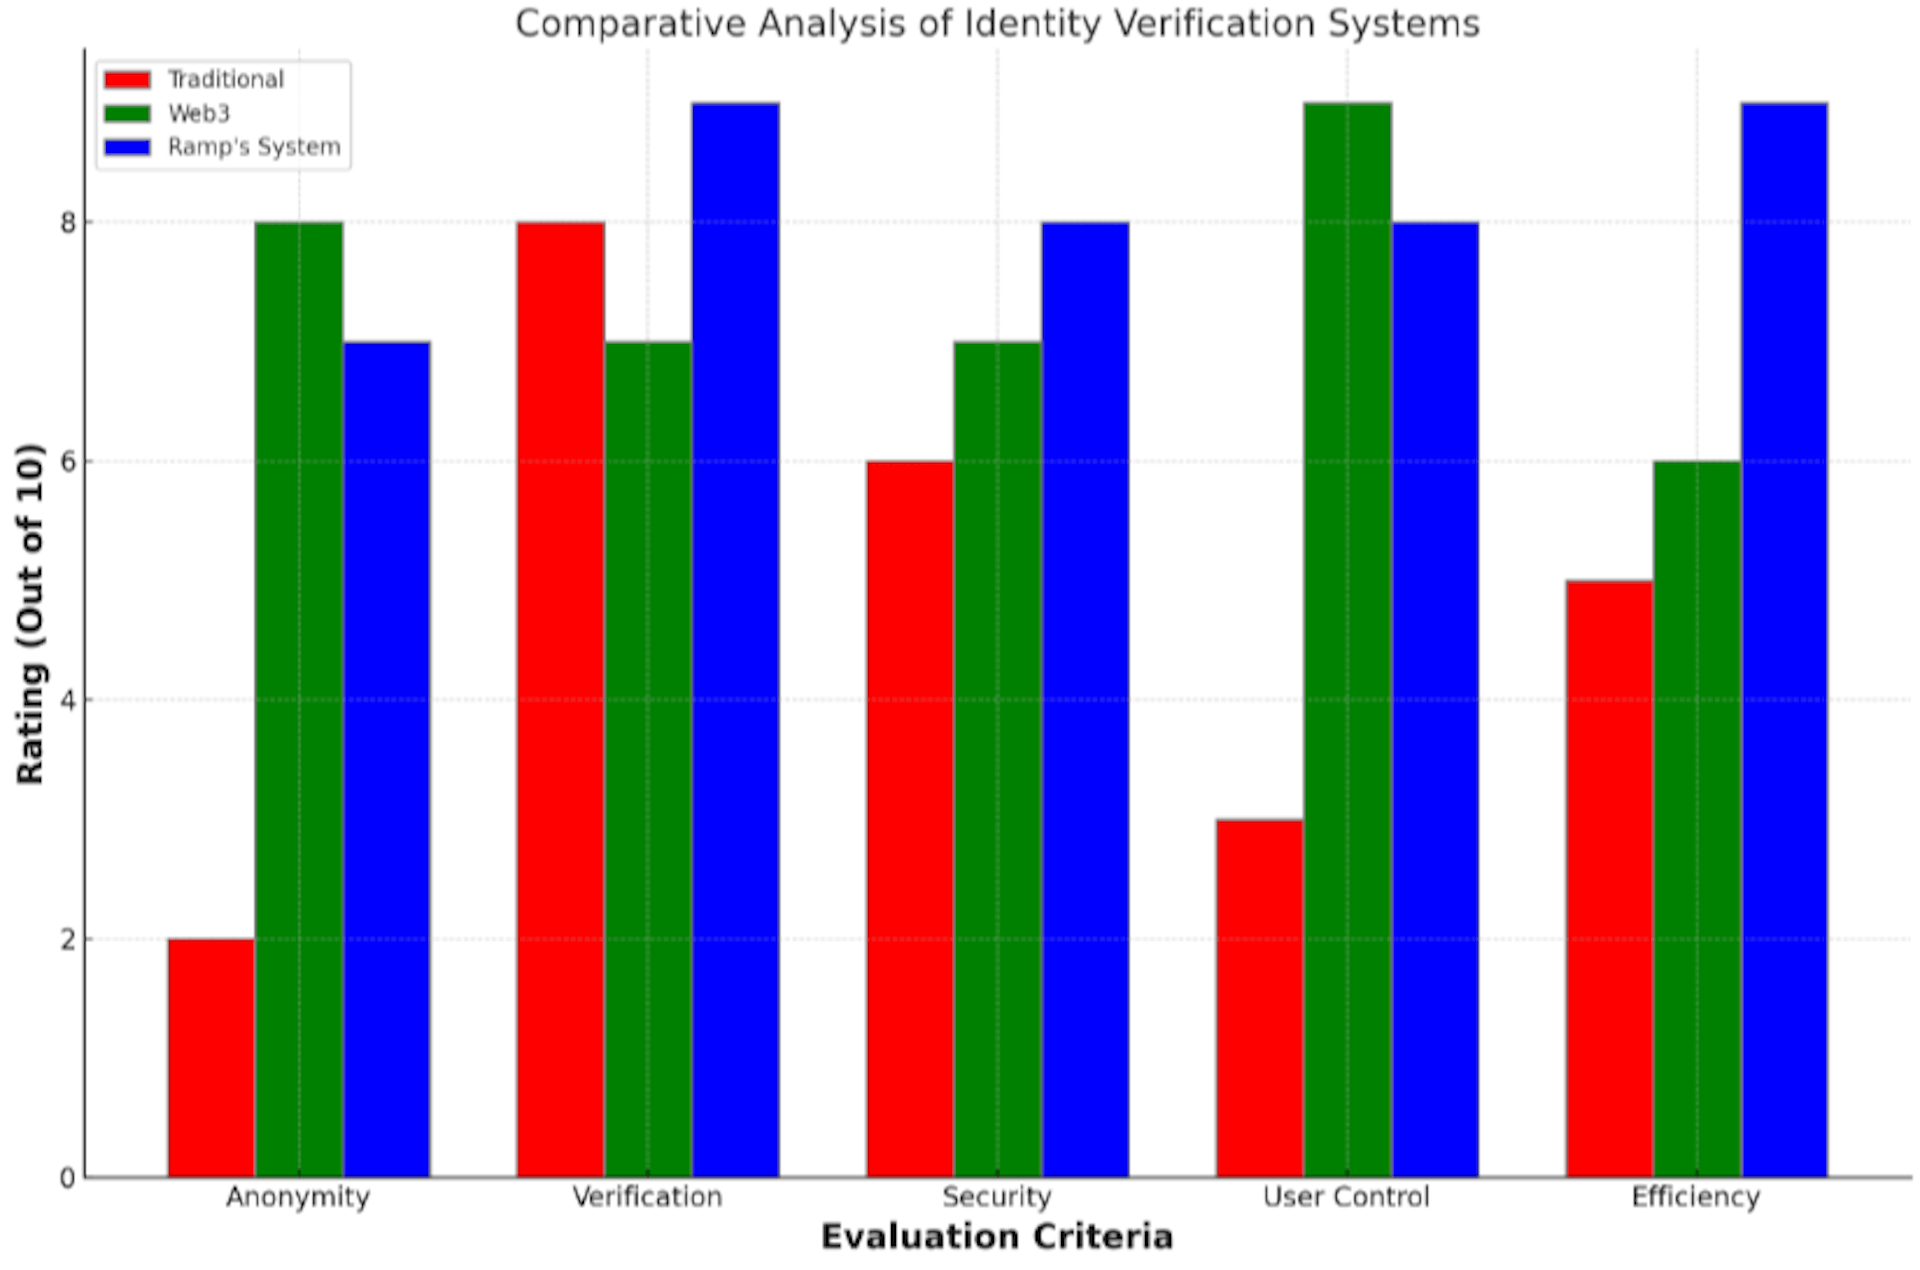 Vergleichende Analyse von Identitätsverifizierungssystemen in fünf kritischen Dimensionen: Anonymität, Verifizierung, Sicherheit, Benutzerkontrolle und Effizienz.